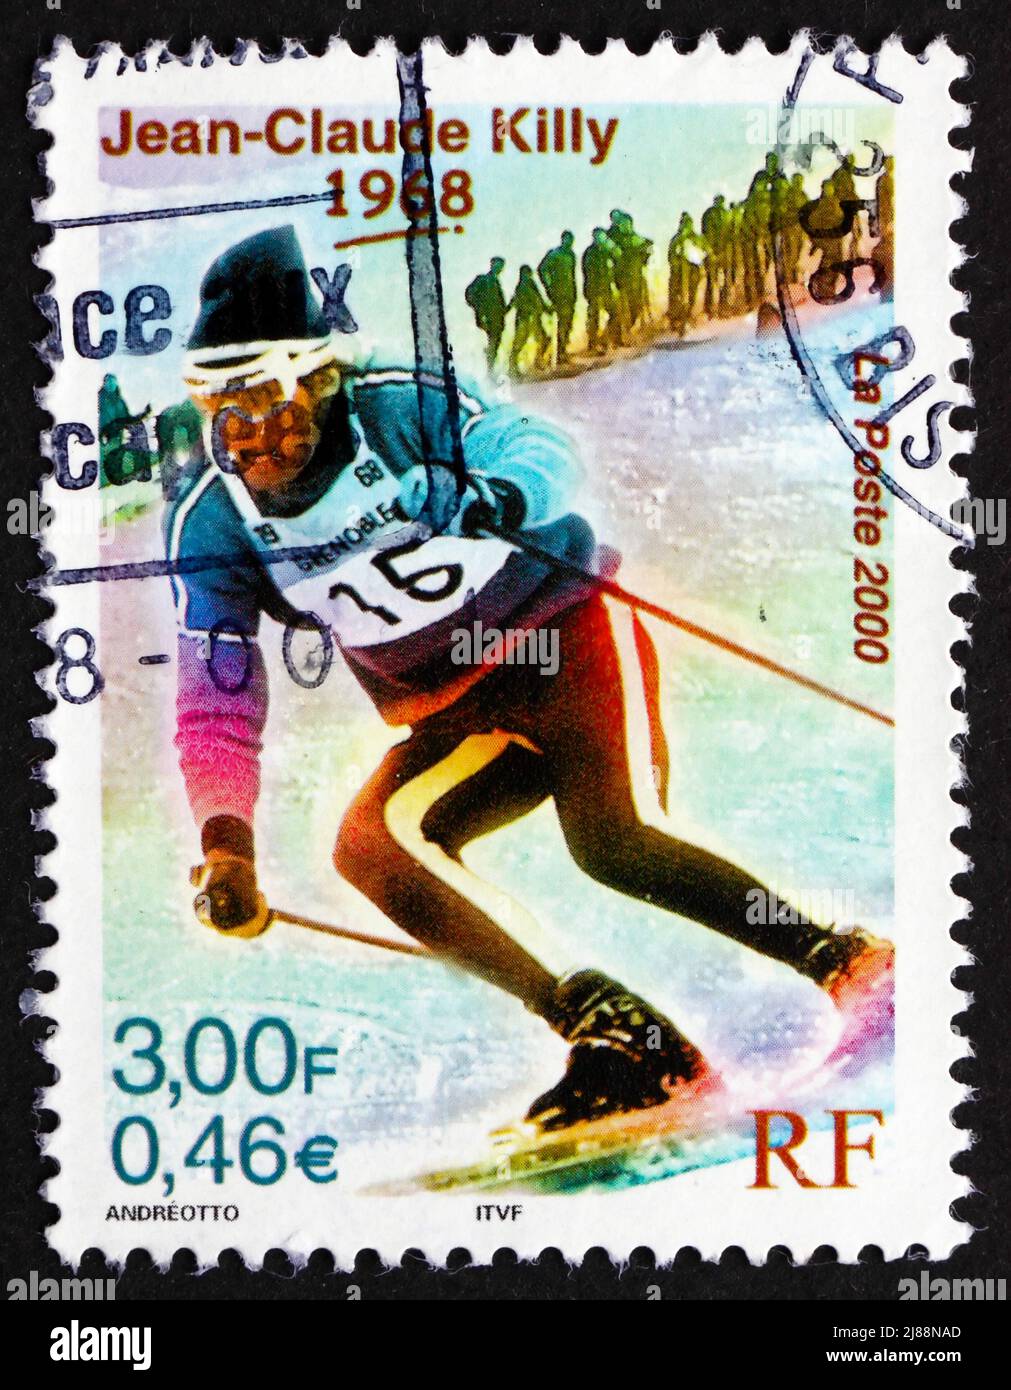 FRANCIA - CIRCA 2000: Un francobollo stampato in Francia mostra Jean-Claude Killy vince tre Olimpiadi invernali Medaglie d'oro, 1968, circa 2000 Foto Stock